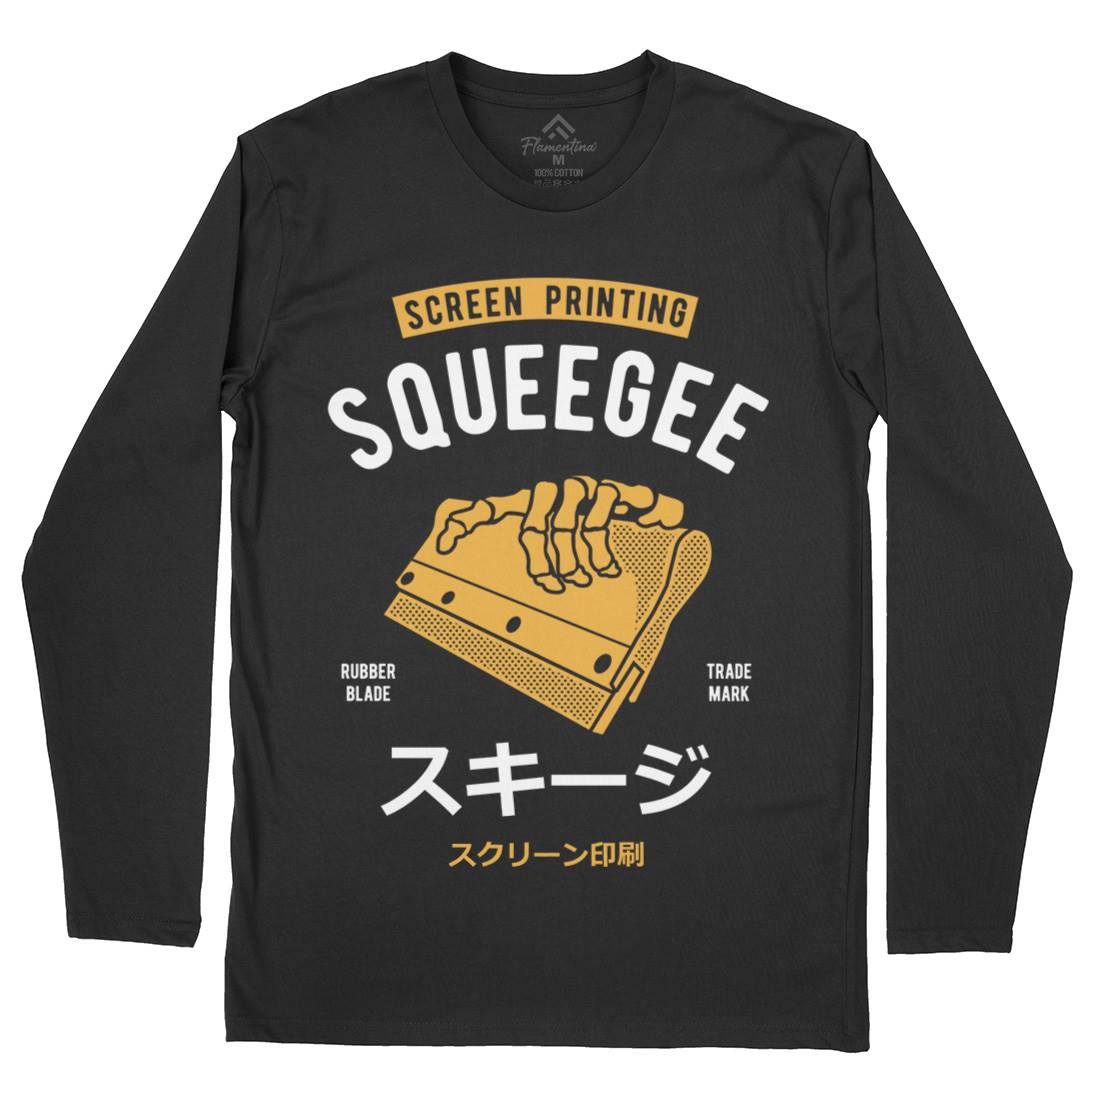 Squeegee Social Club Mens Long Sleeve T-Shirt Work A282